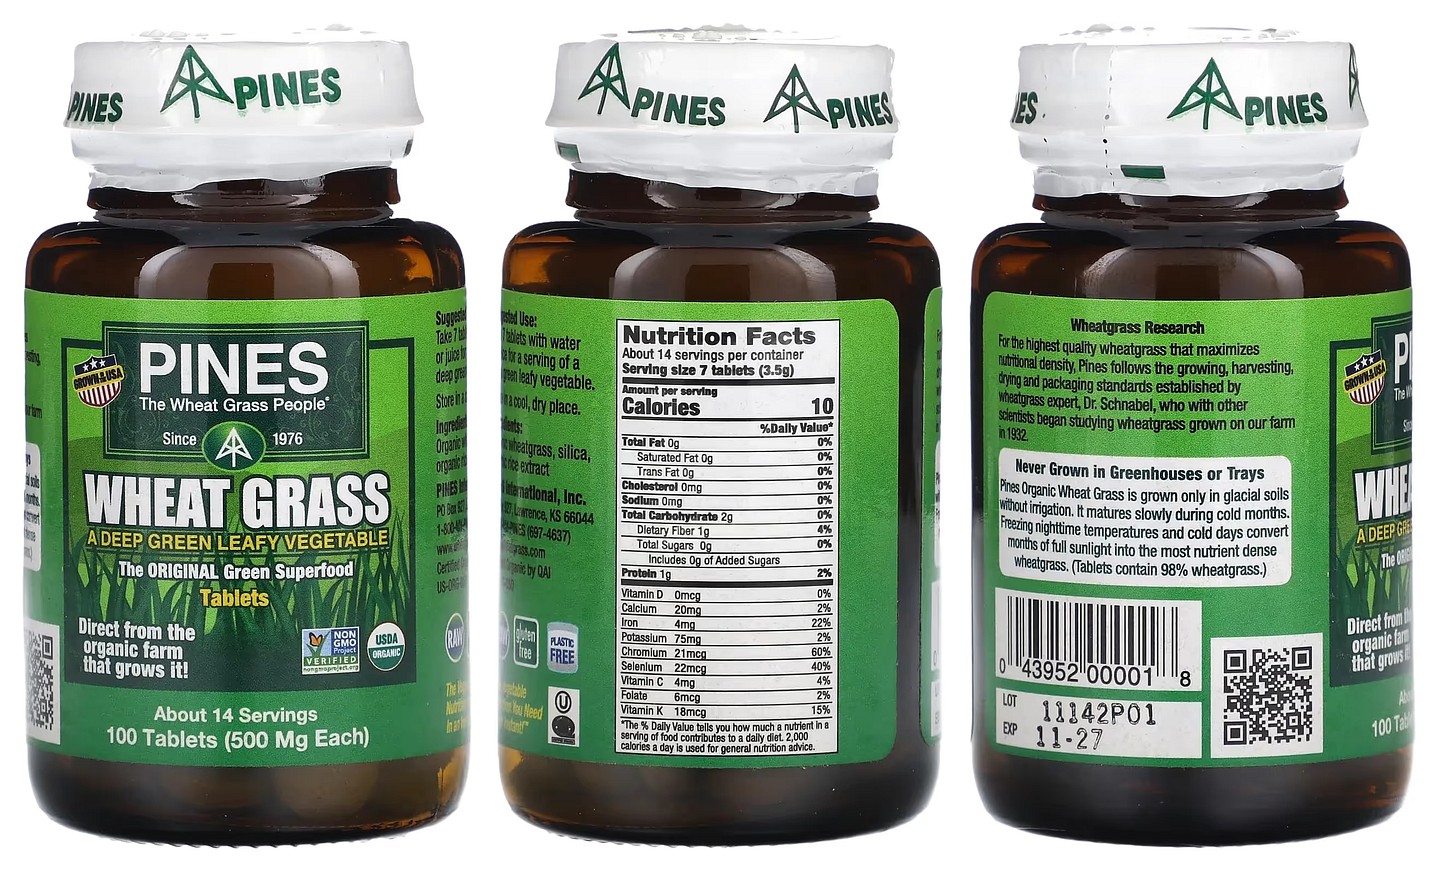 Pines International, Wheat Grass packaging